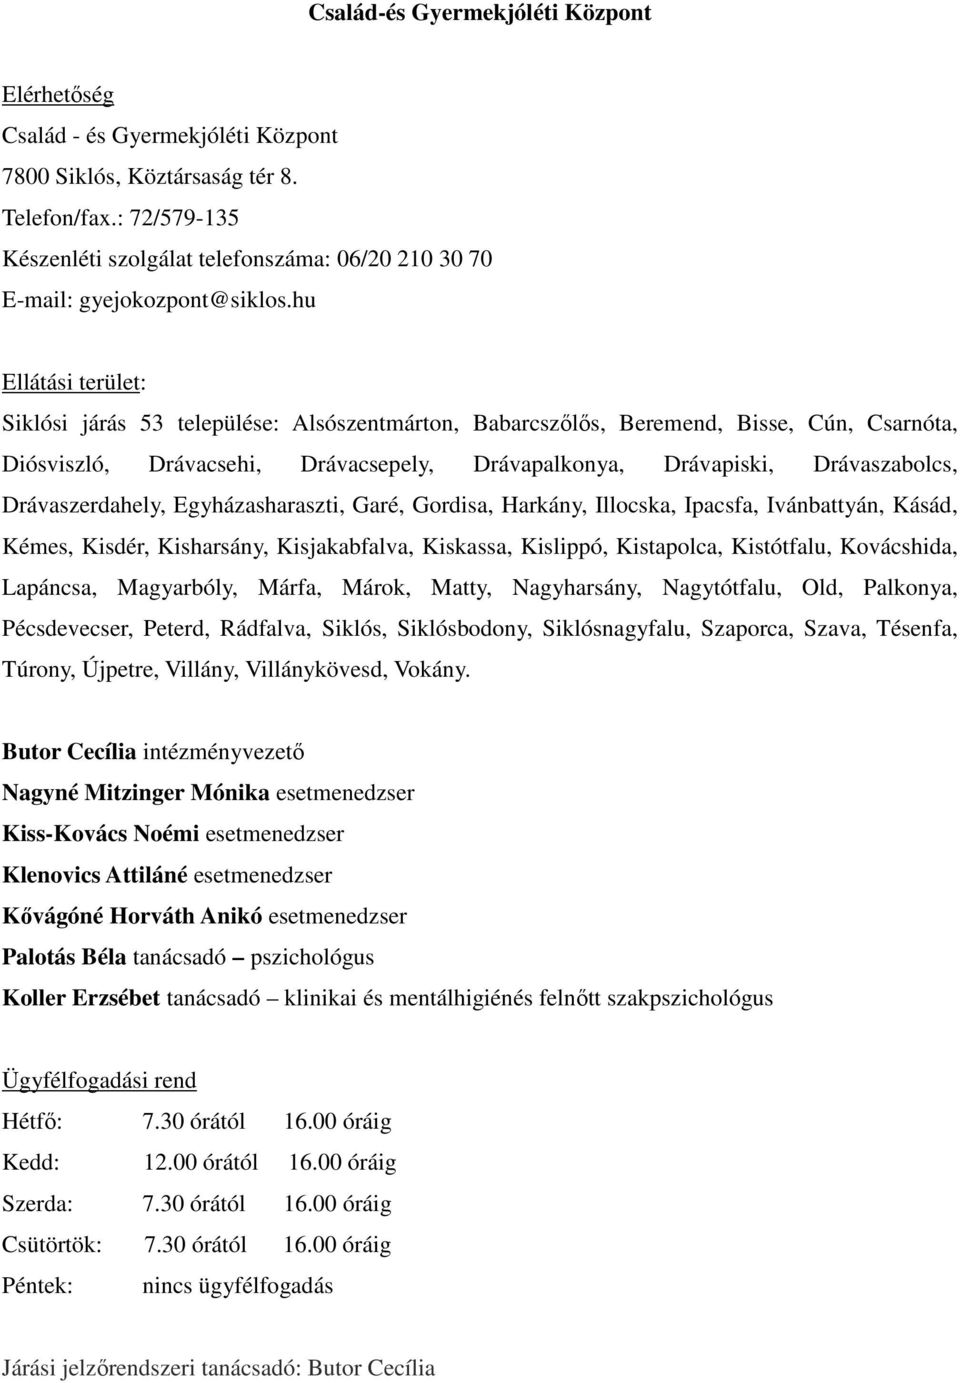 hu Ellátási terület: Siklósi járás 53 települése: Alsószentmárton, Babarcszőlős, Beremend, Bisse, Cún, Csarnóta, Diósviszló, Drávacsehi, Drávacsepely, Drávapalkonya, Drávapiski, Drávaszabolcs,